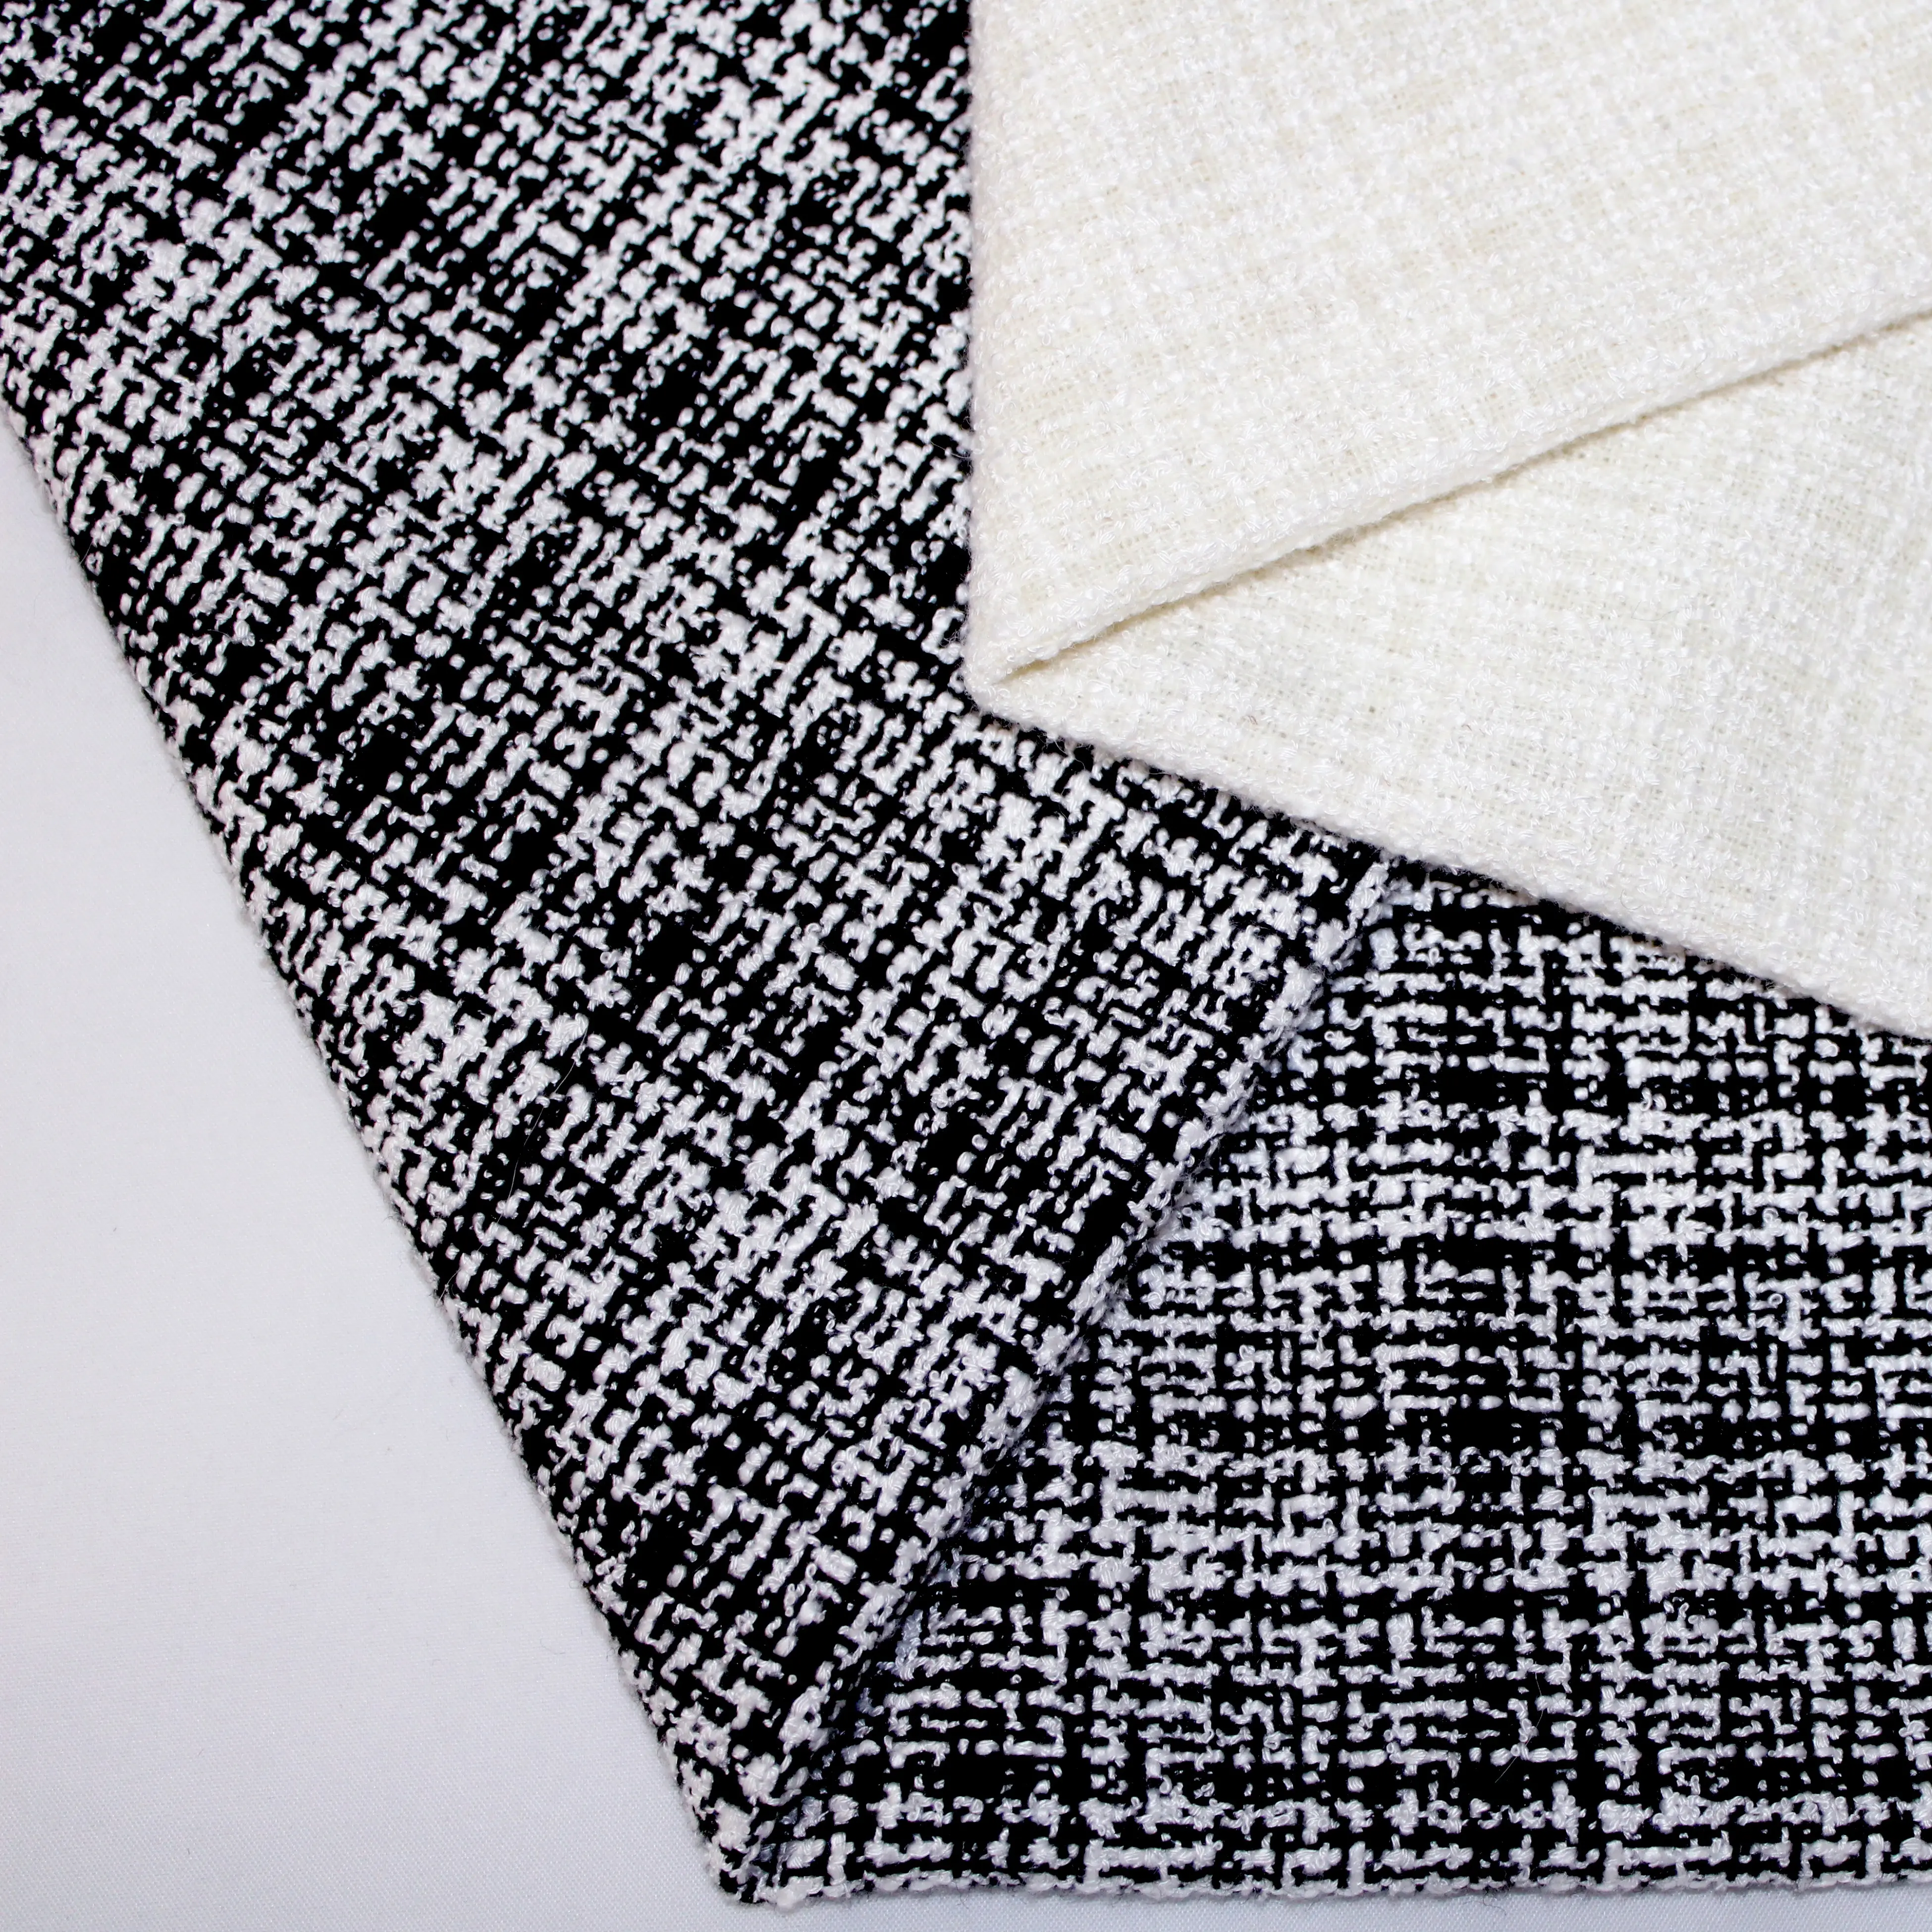 Hot Sale Großhandel Elegante weiche Textil Tweed schwarz weiß gestrickt Plaid Wolle Wolle Polyester Stoff für Lady Dress Anzug Kleidungs stück